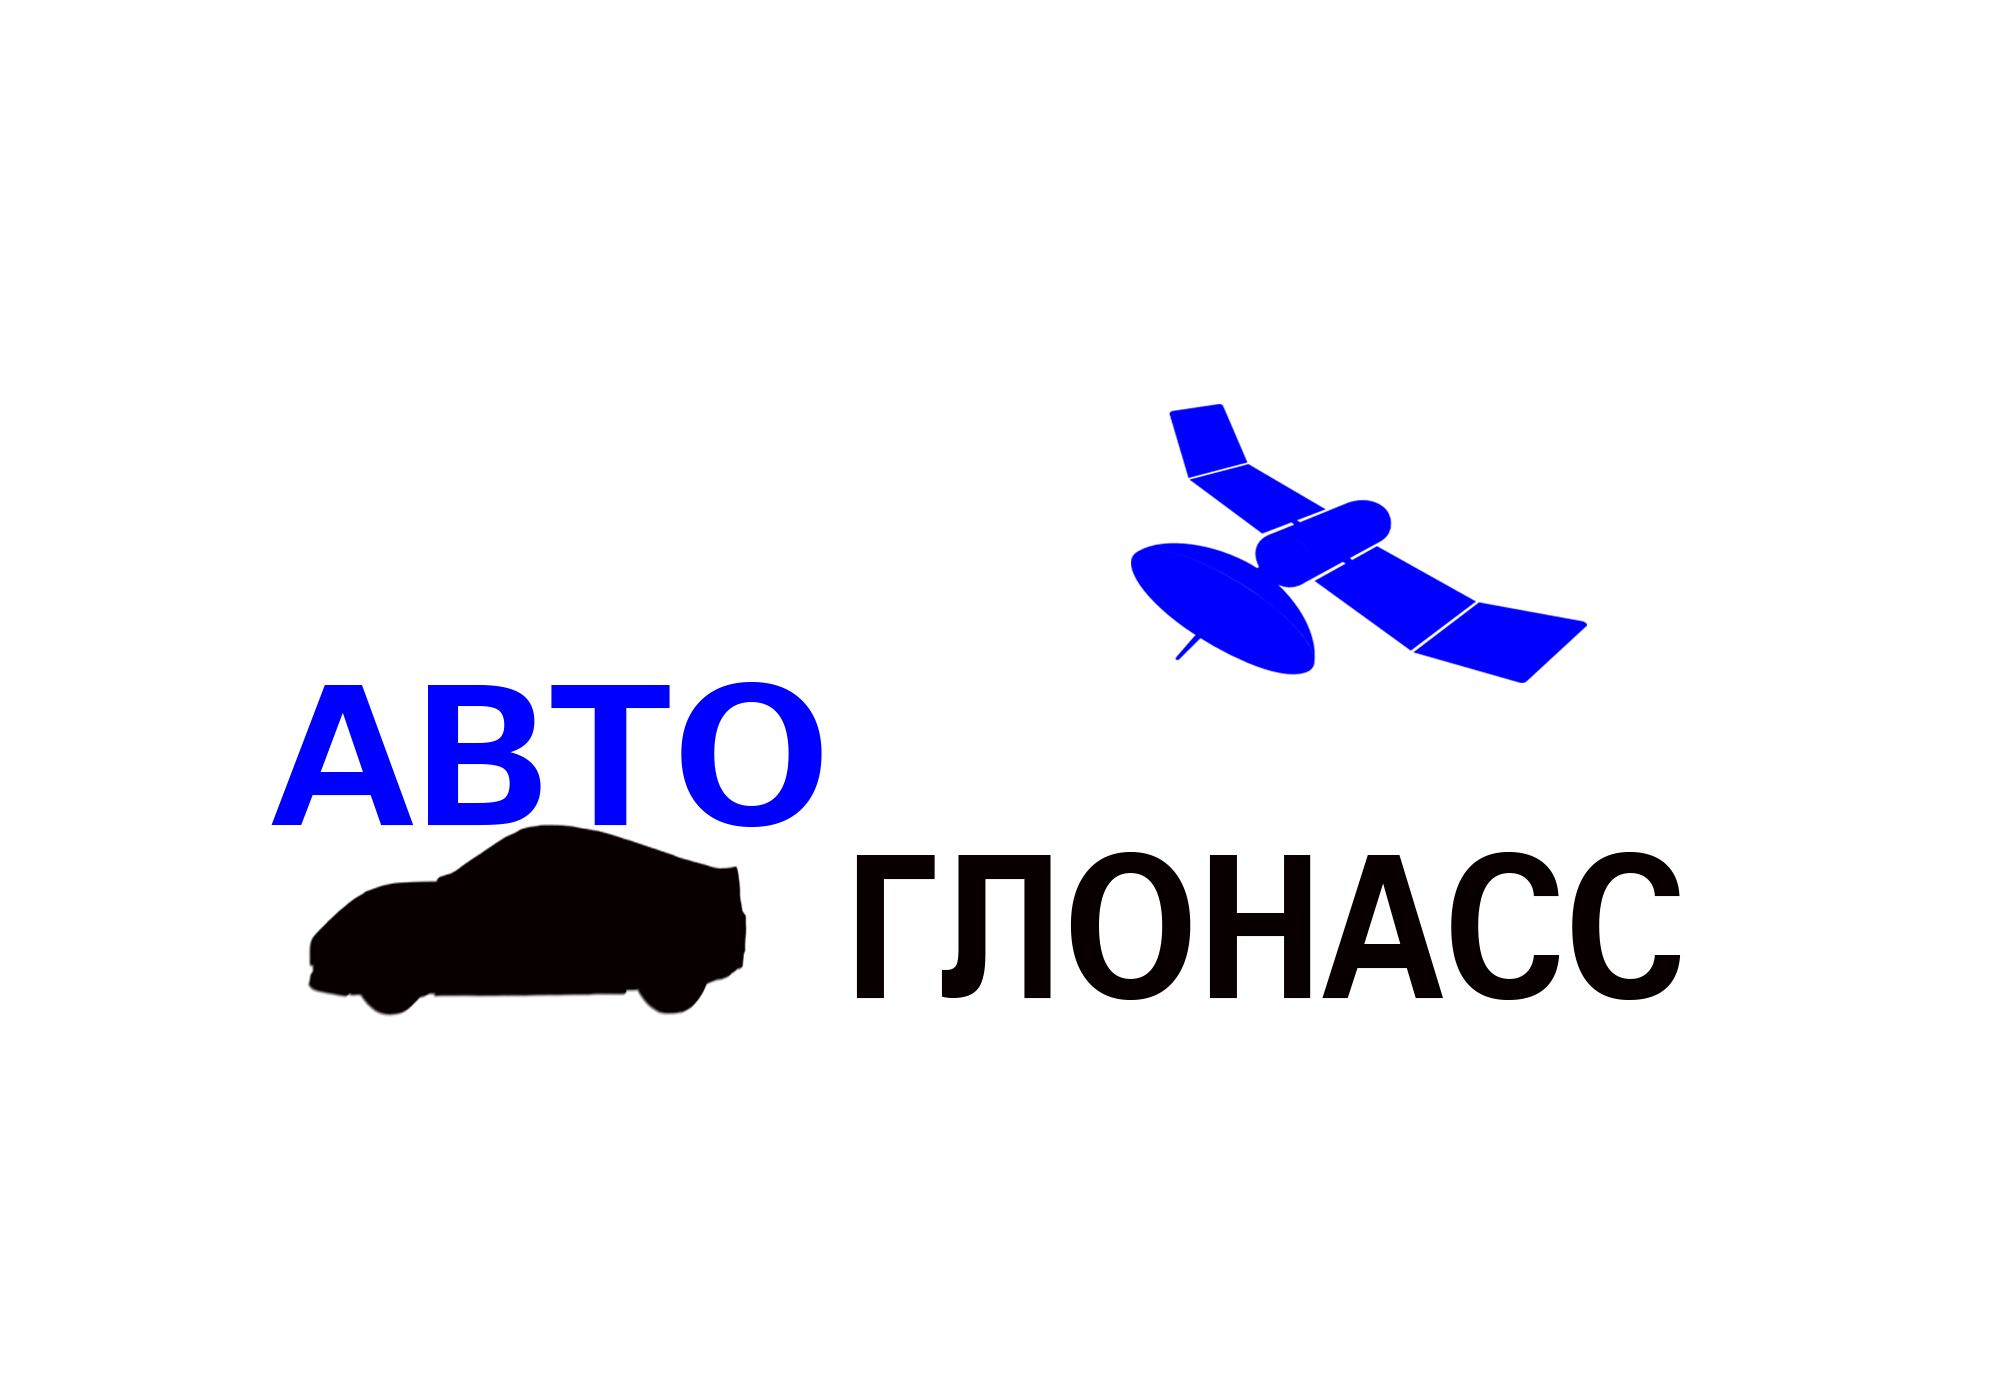 Логотип и фирменный стиль проекта АвтоГЛОНАСС - дизайнер dreamveer